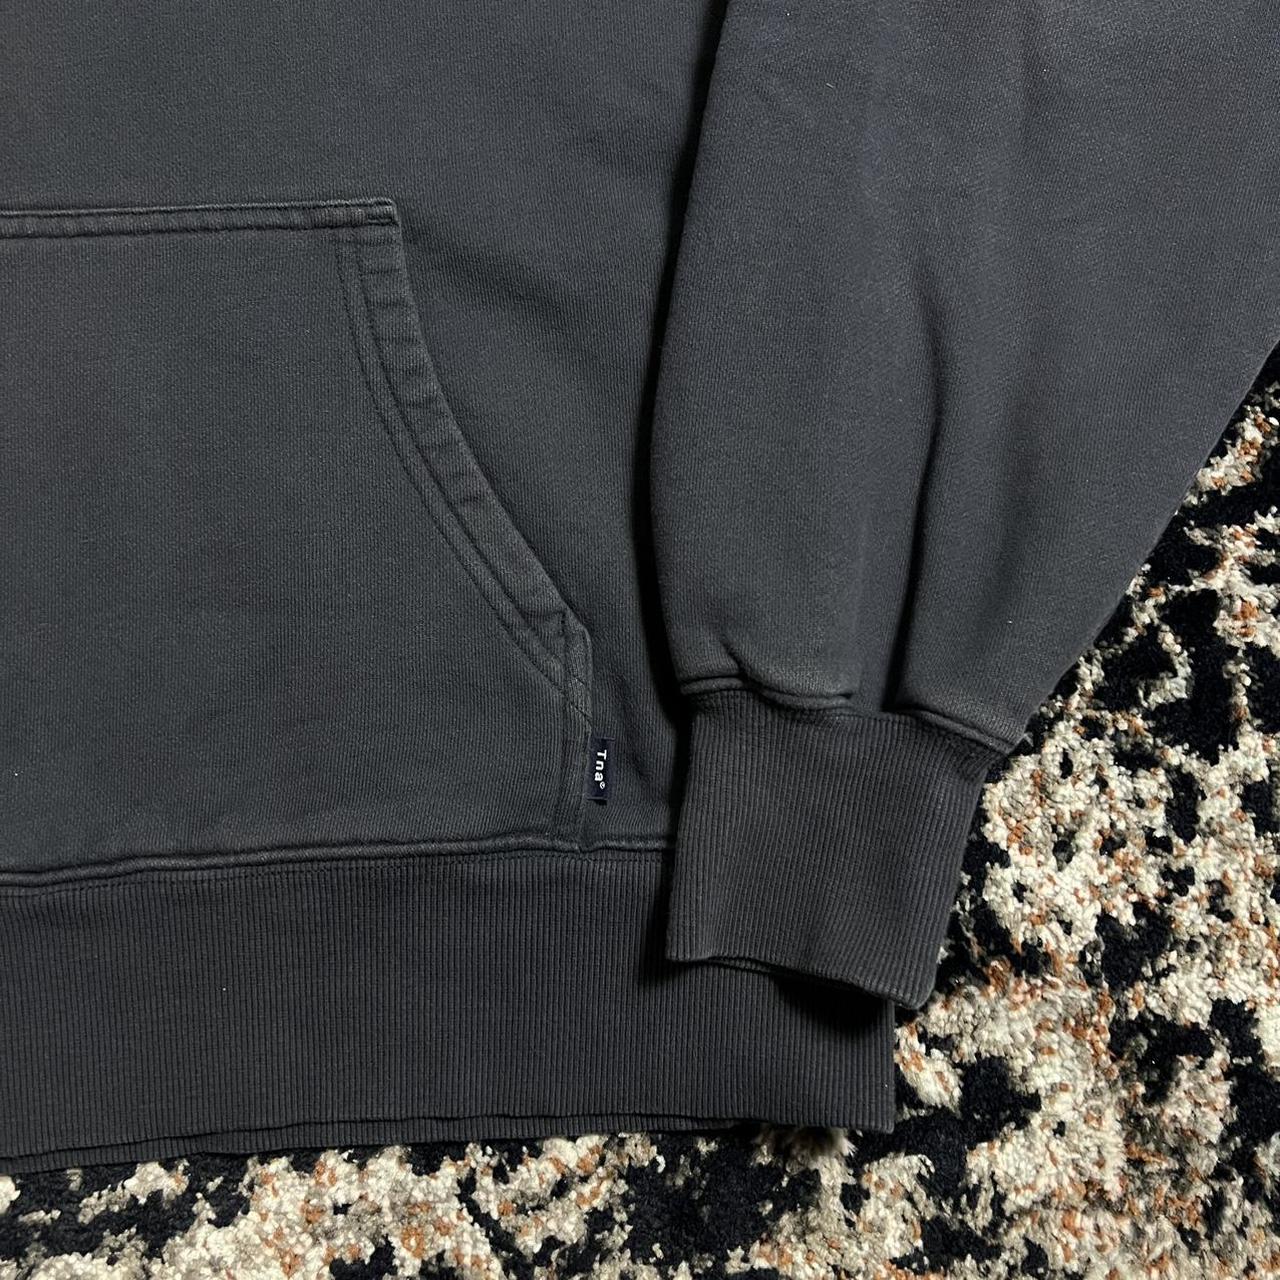 Aritzia Men's Black and Navy Sweatshirt | Depop